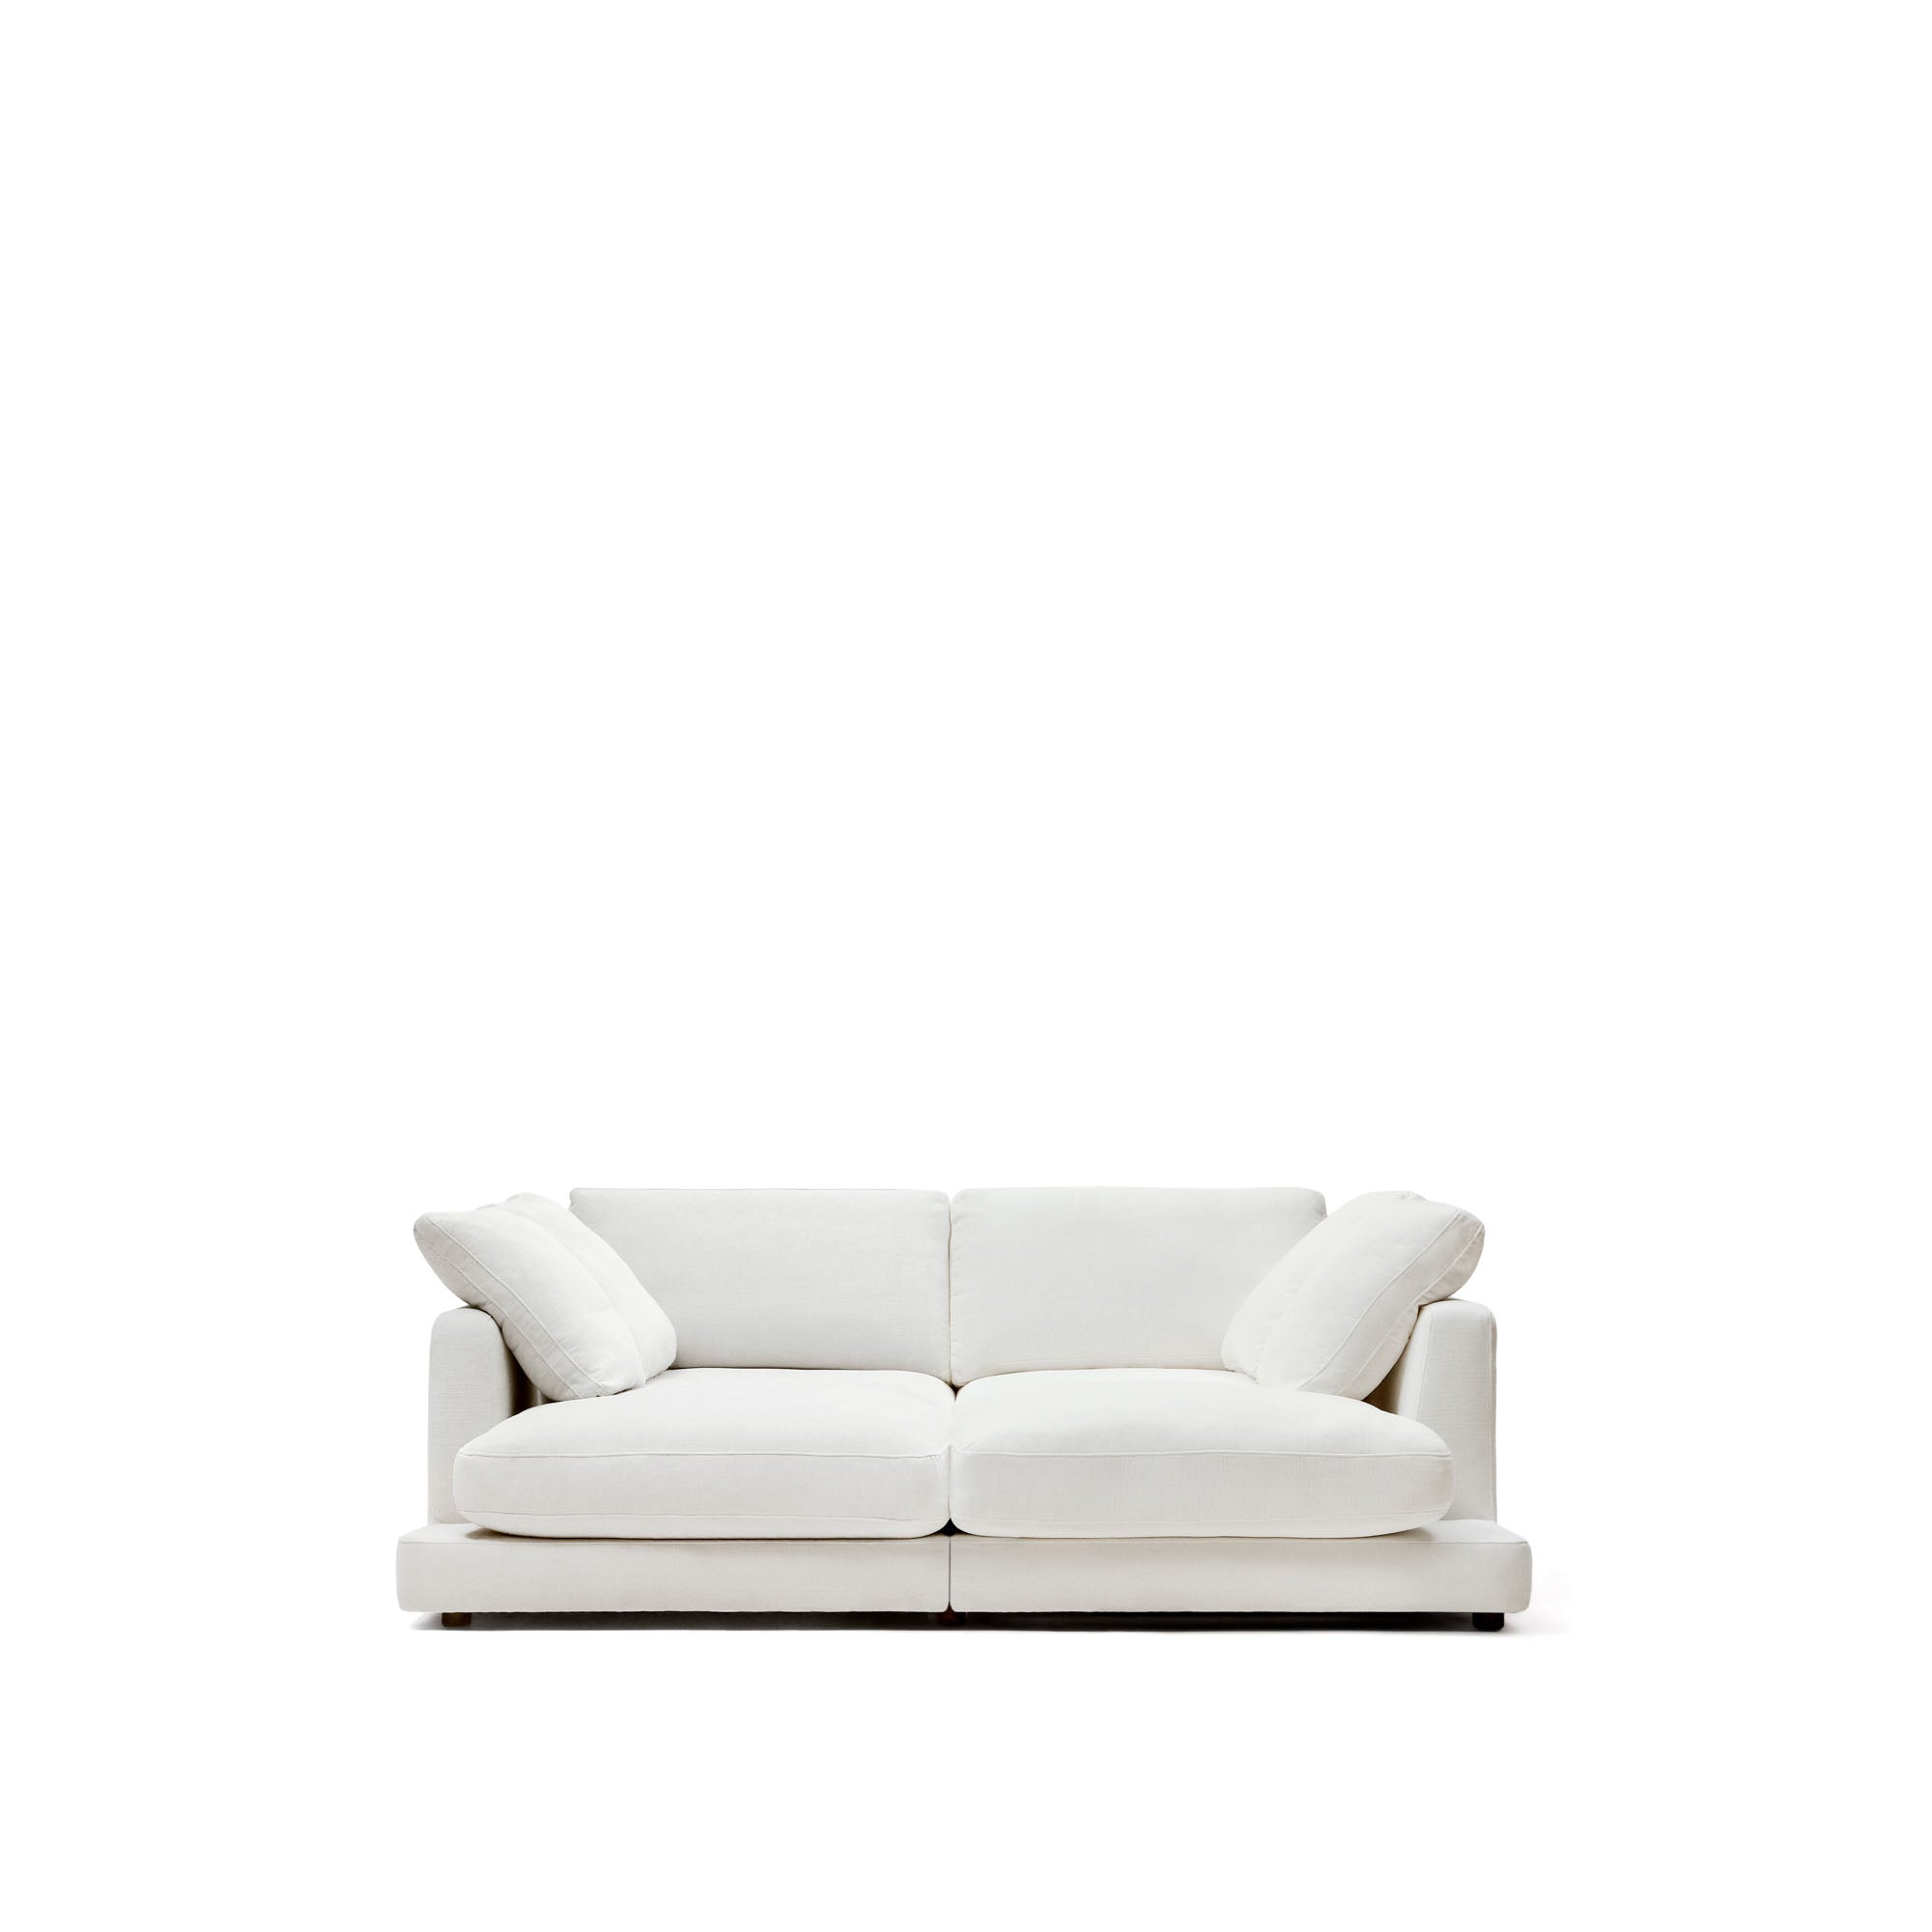 Gala 3 személyes kanapé dupla fekvőfotellel, fehér színben, 210 cm